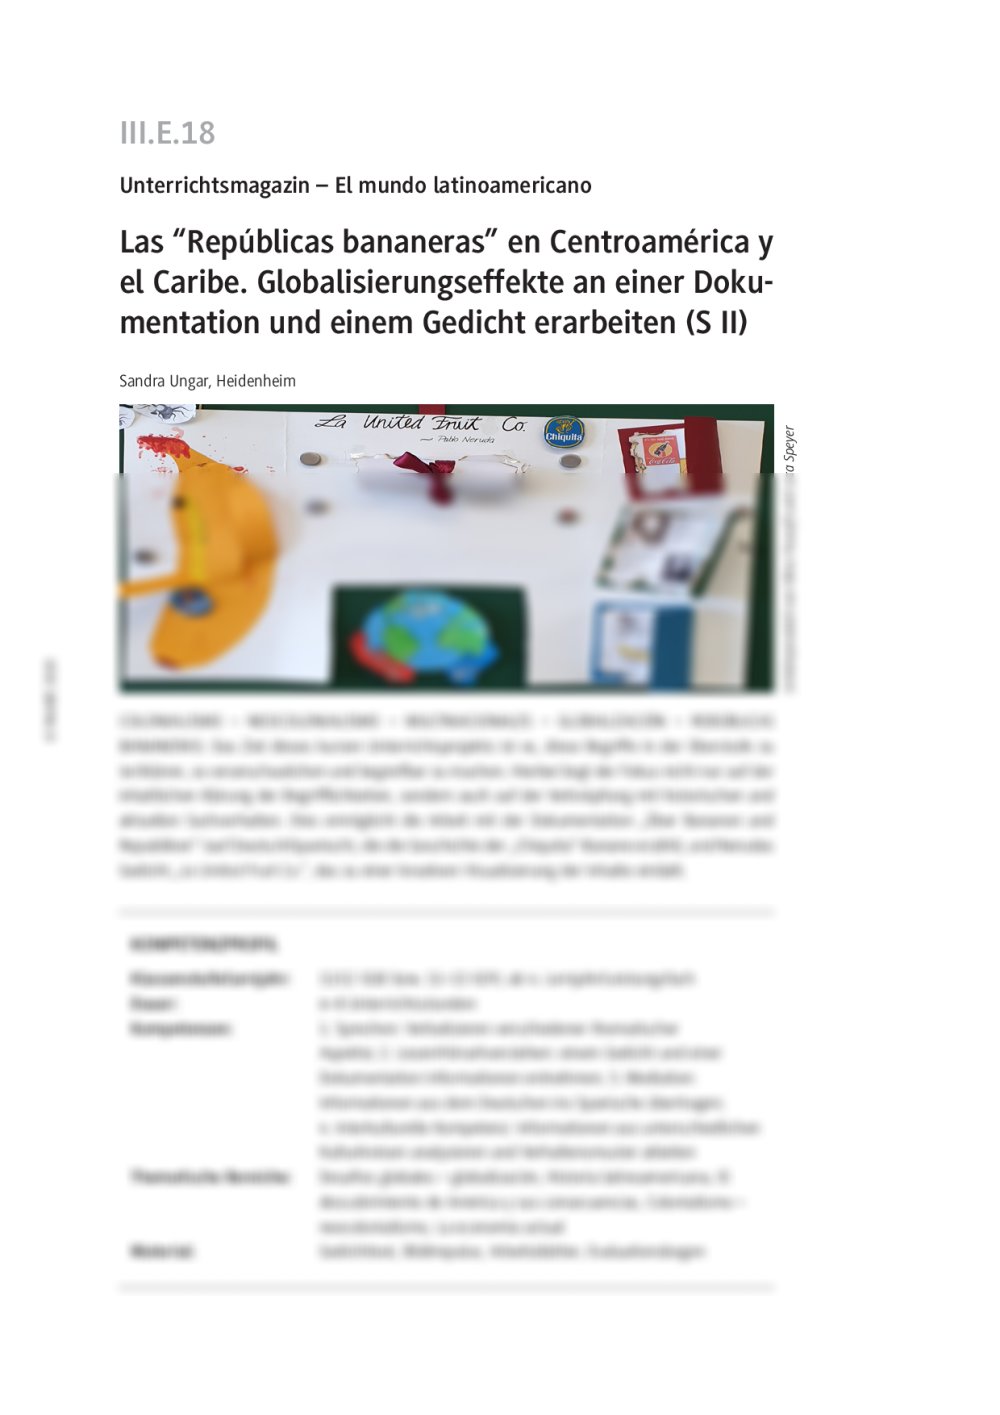 Las "Repúblicas bananeras" en Centroamérica y el Caribe - Seite 1